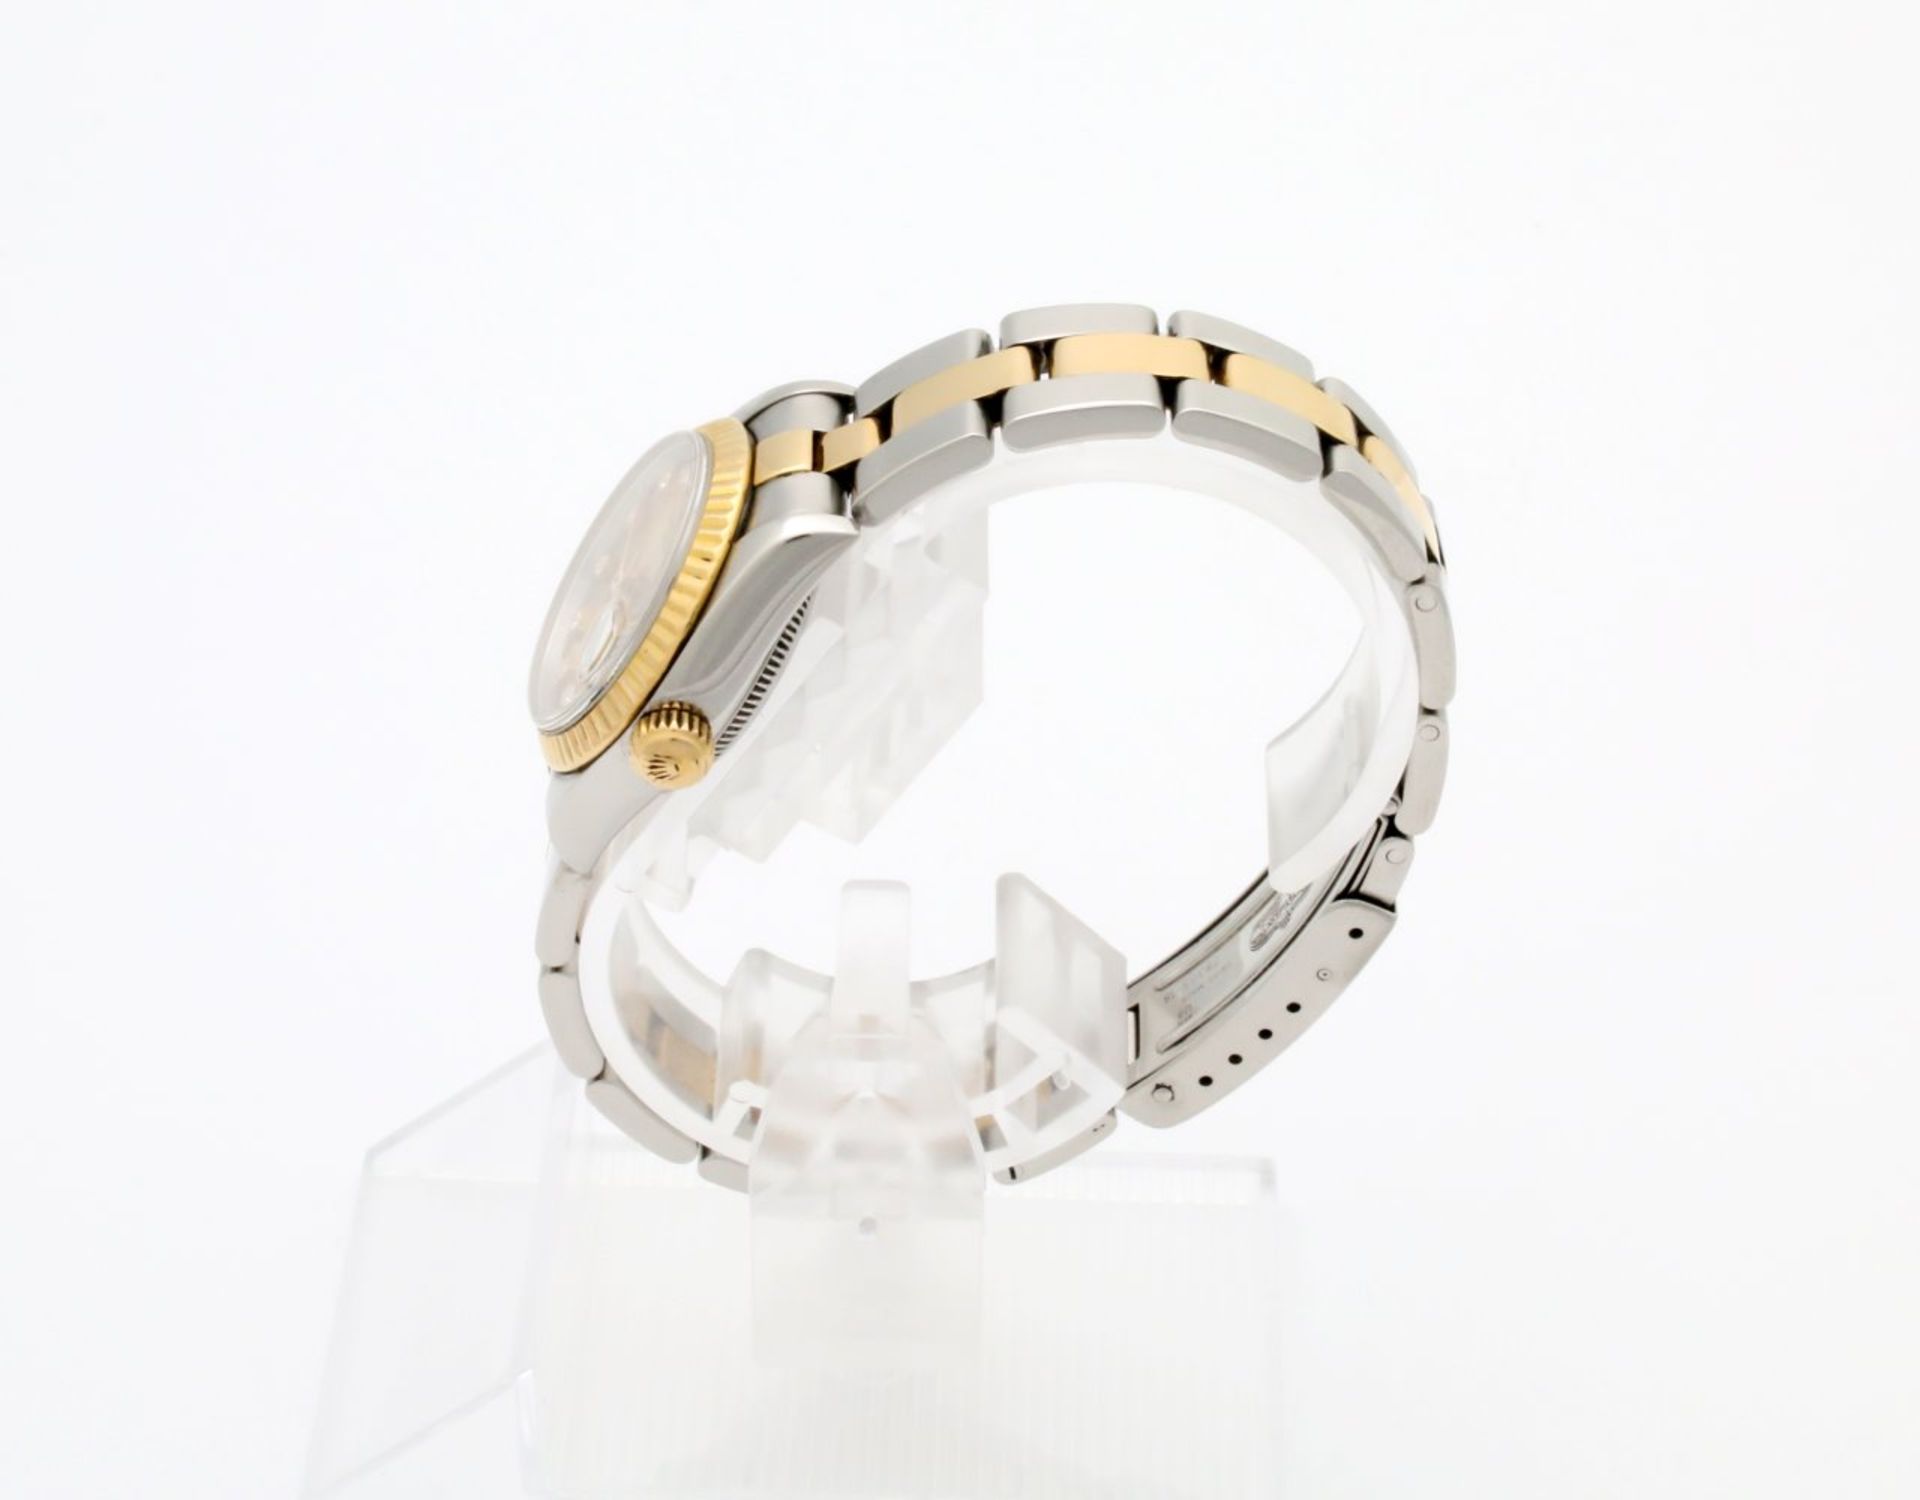 Armbanduhr Rolex Lady Datejust Stahl / Gold mit Brillanten Automatikwerk Kaliber 2135, Ref. 69173, - Bild 5 aus 8